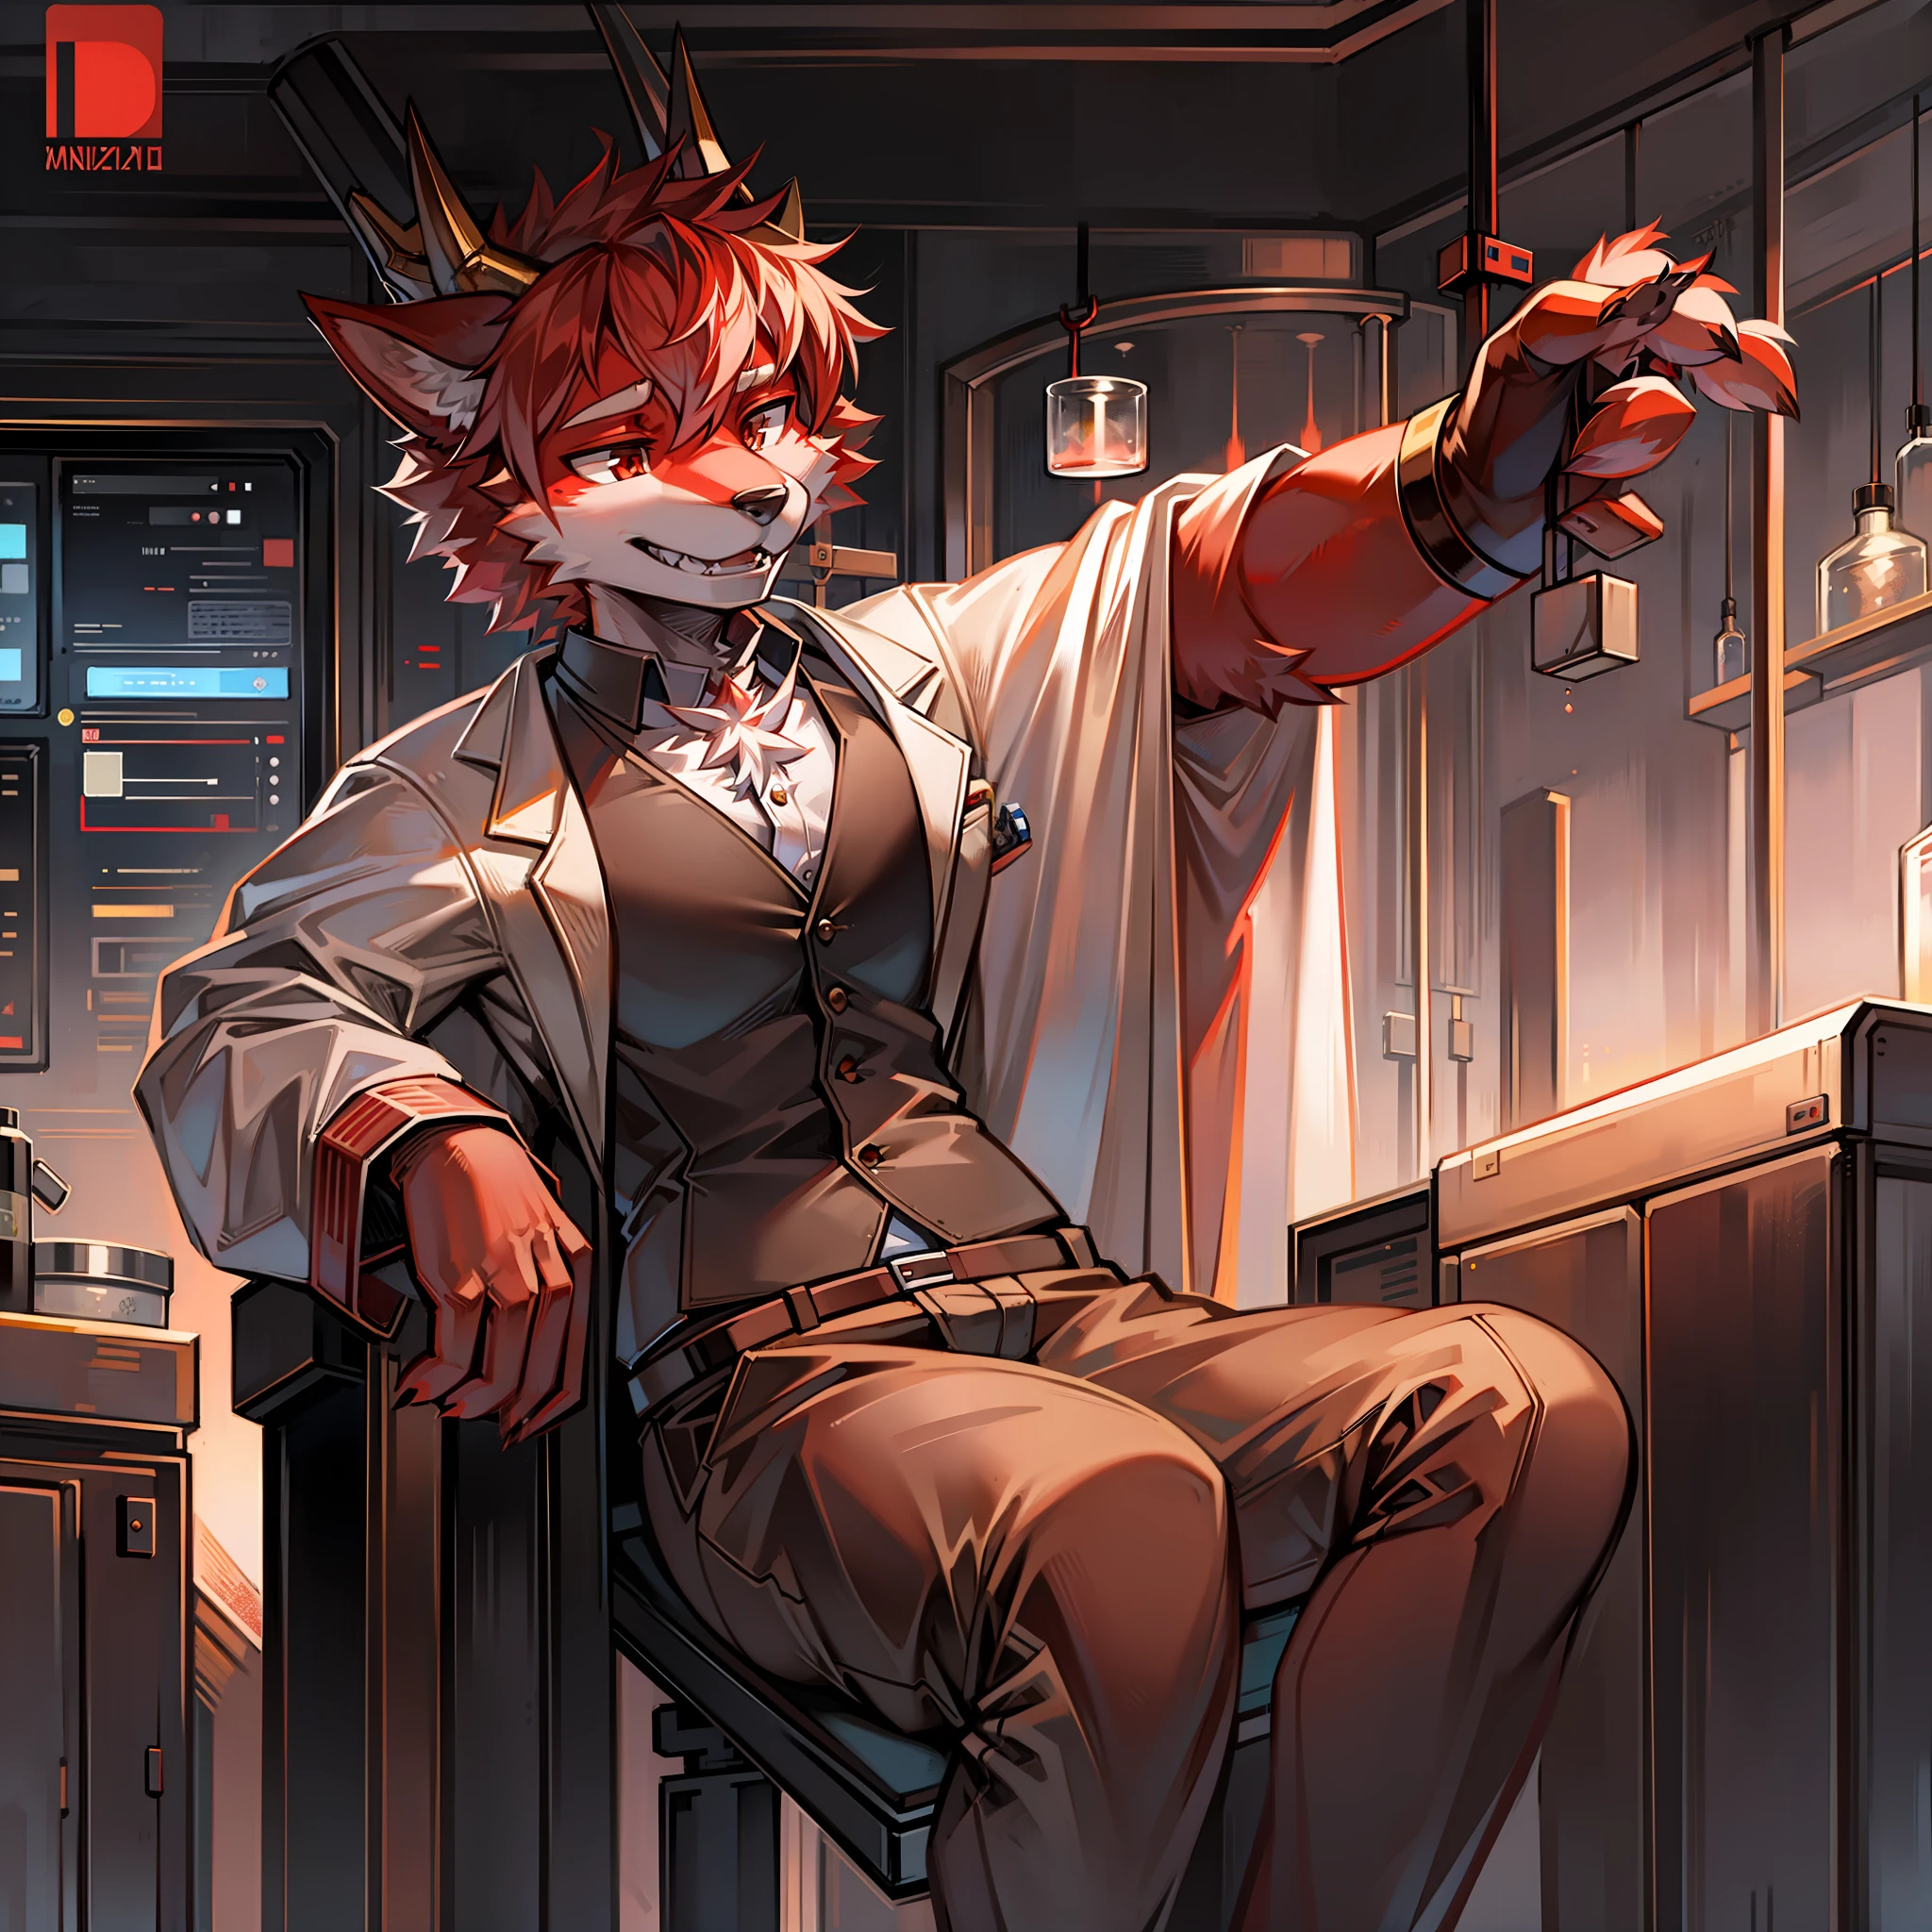 Пушистый красный волк, одетый как учёный в лаборатории, с 4 рогами дракона.